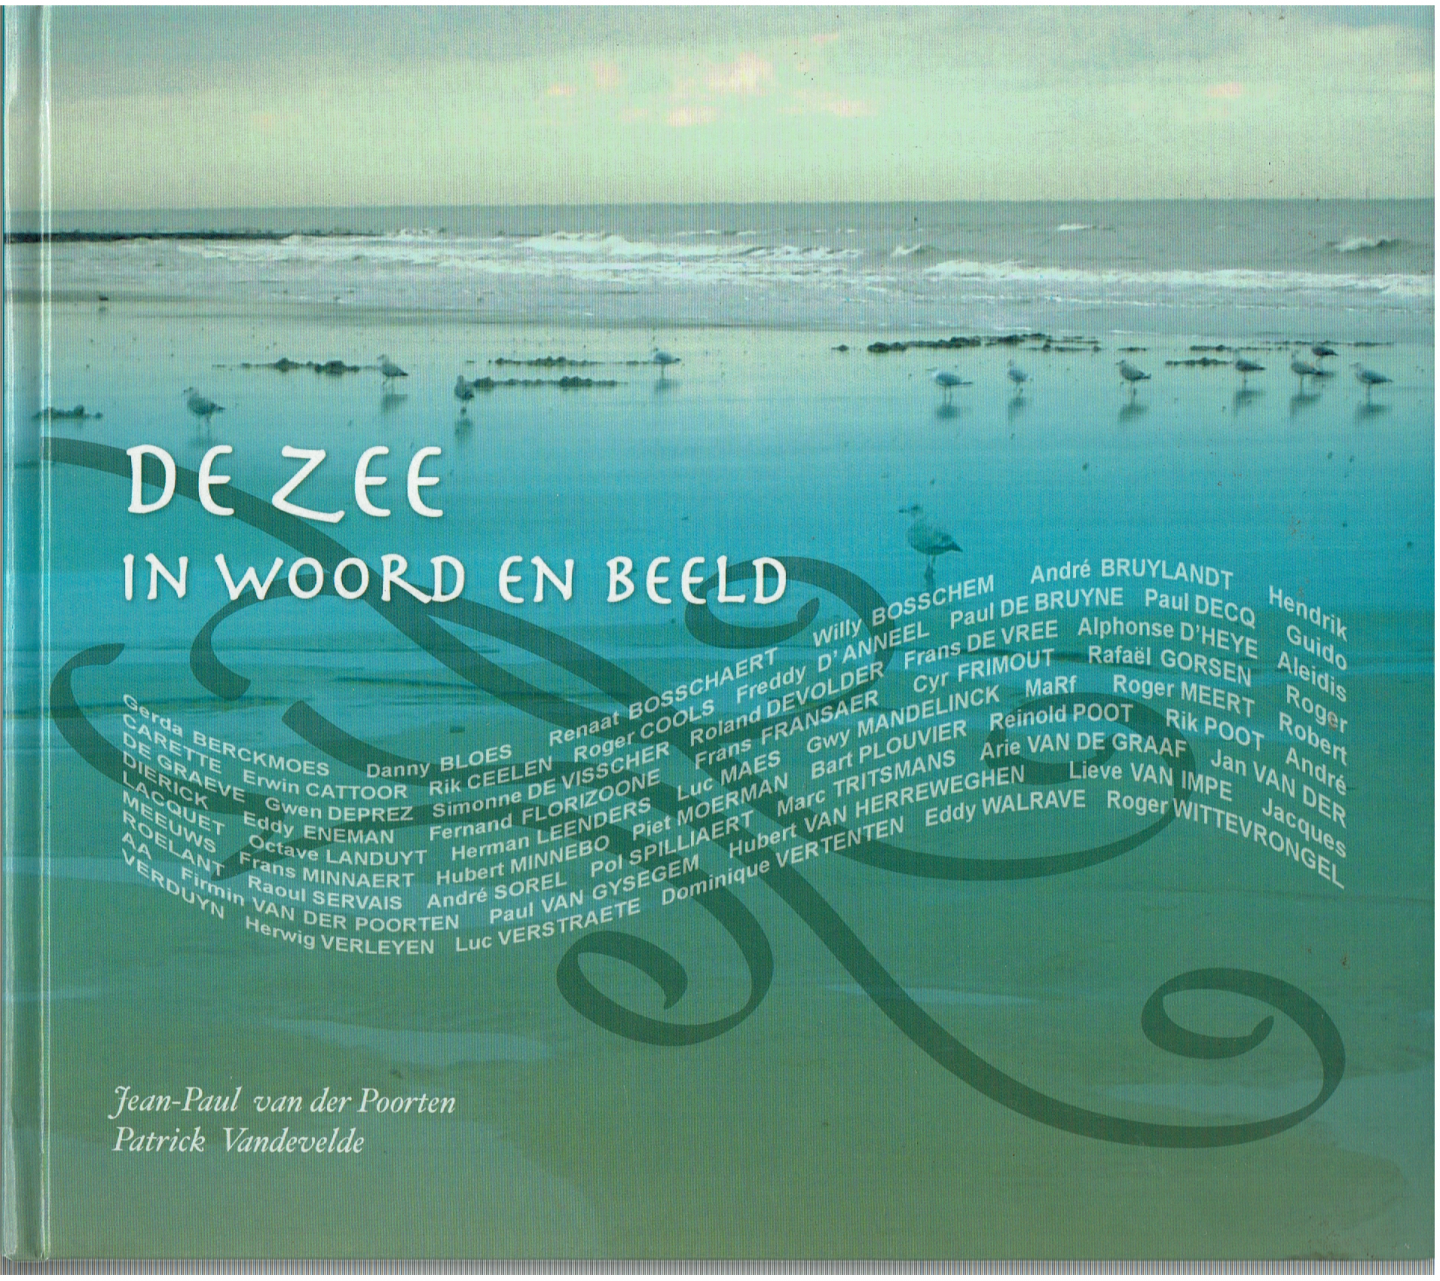 Jean-Paul van der Poorten, Patrick Vandevelde - De zee in woord en beeld